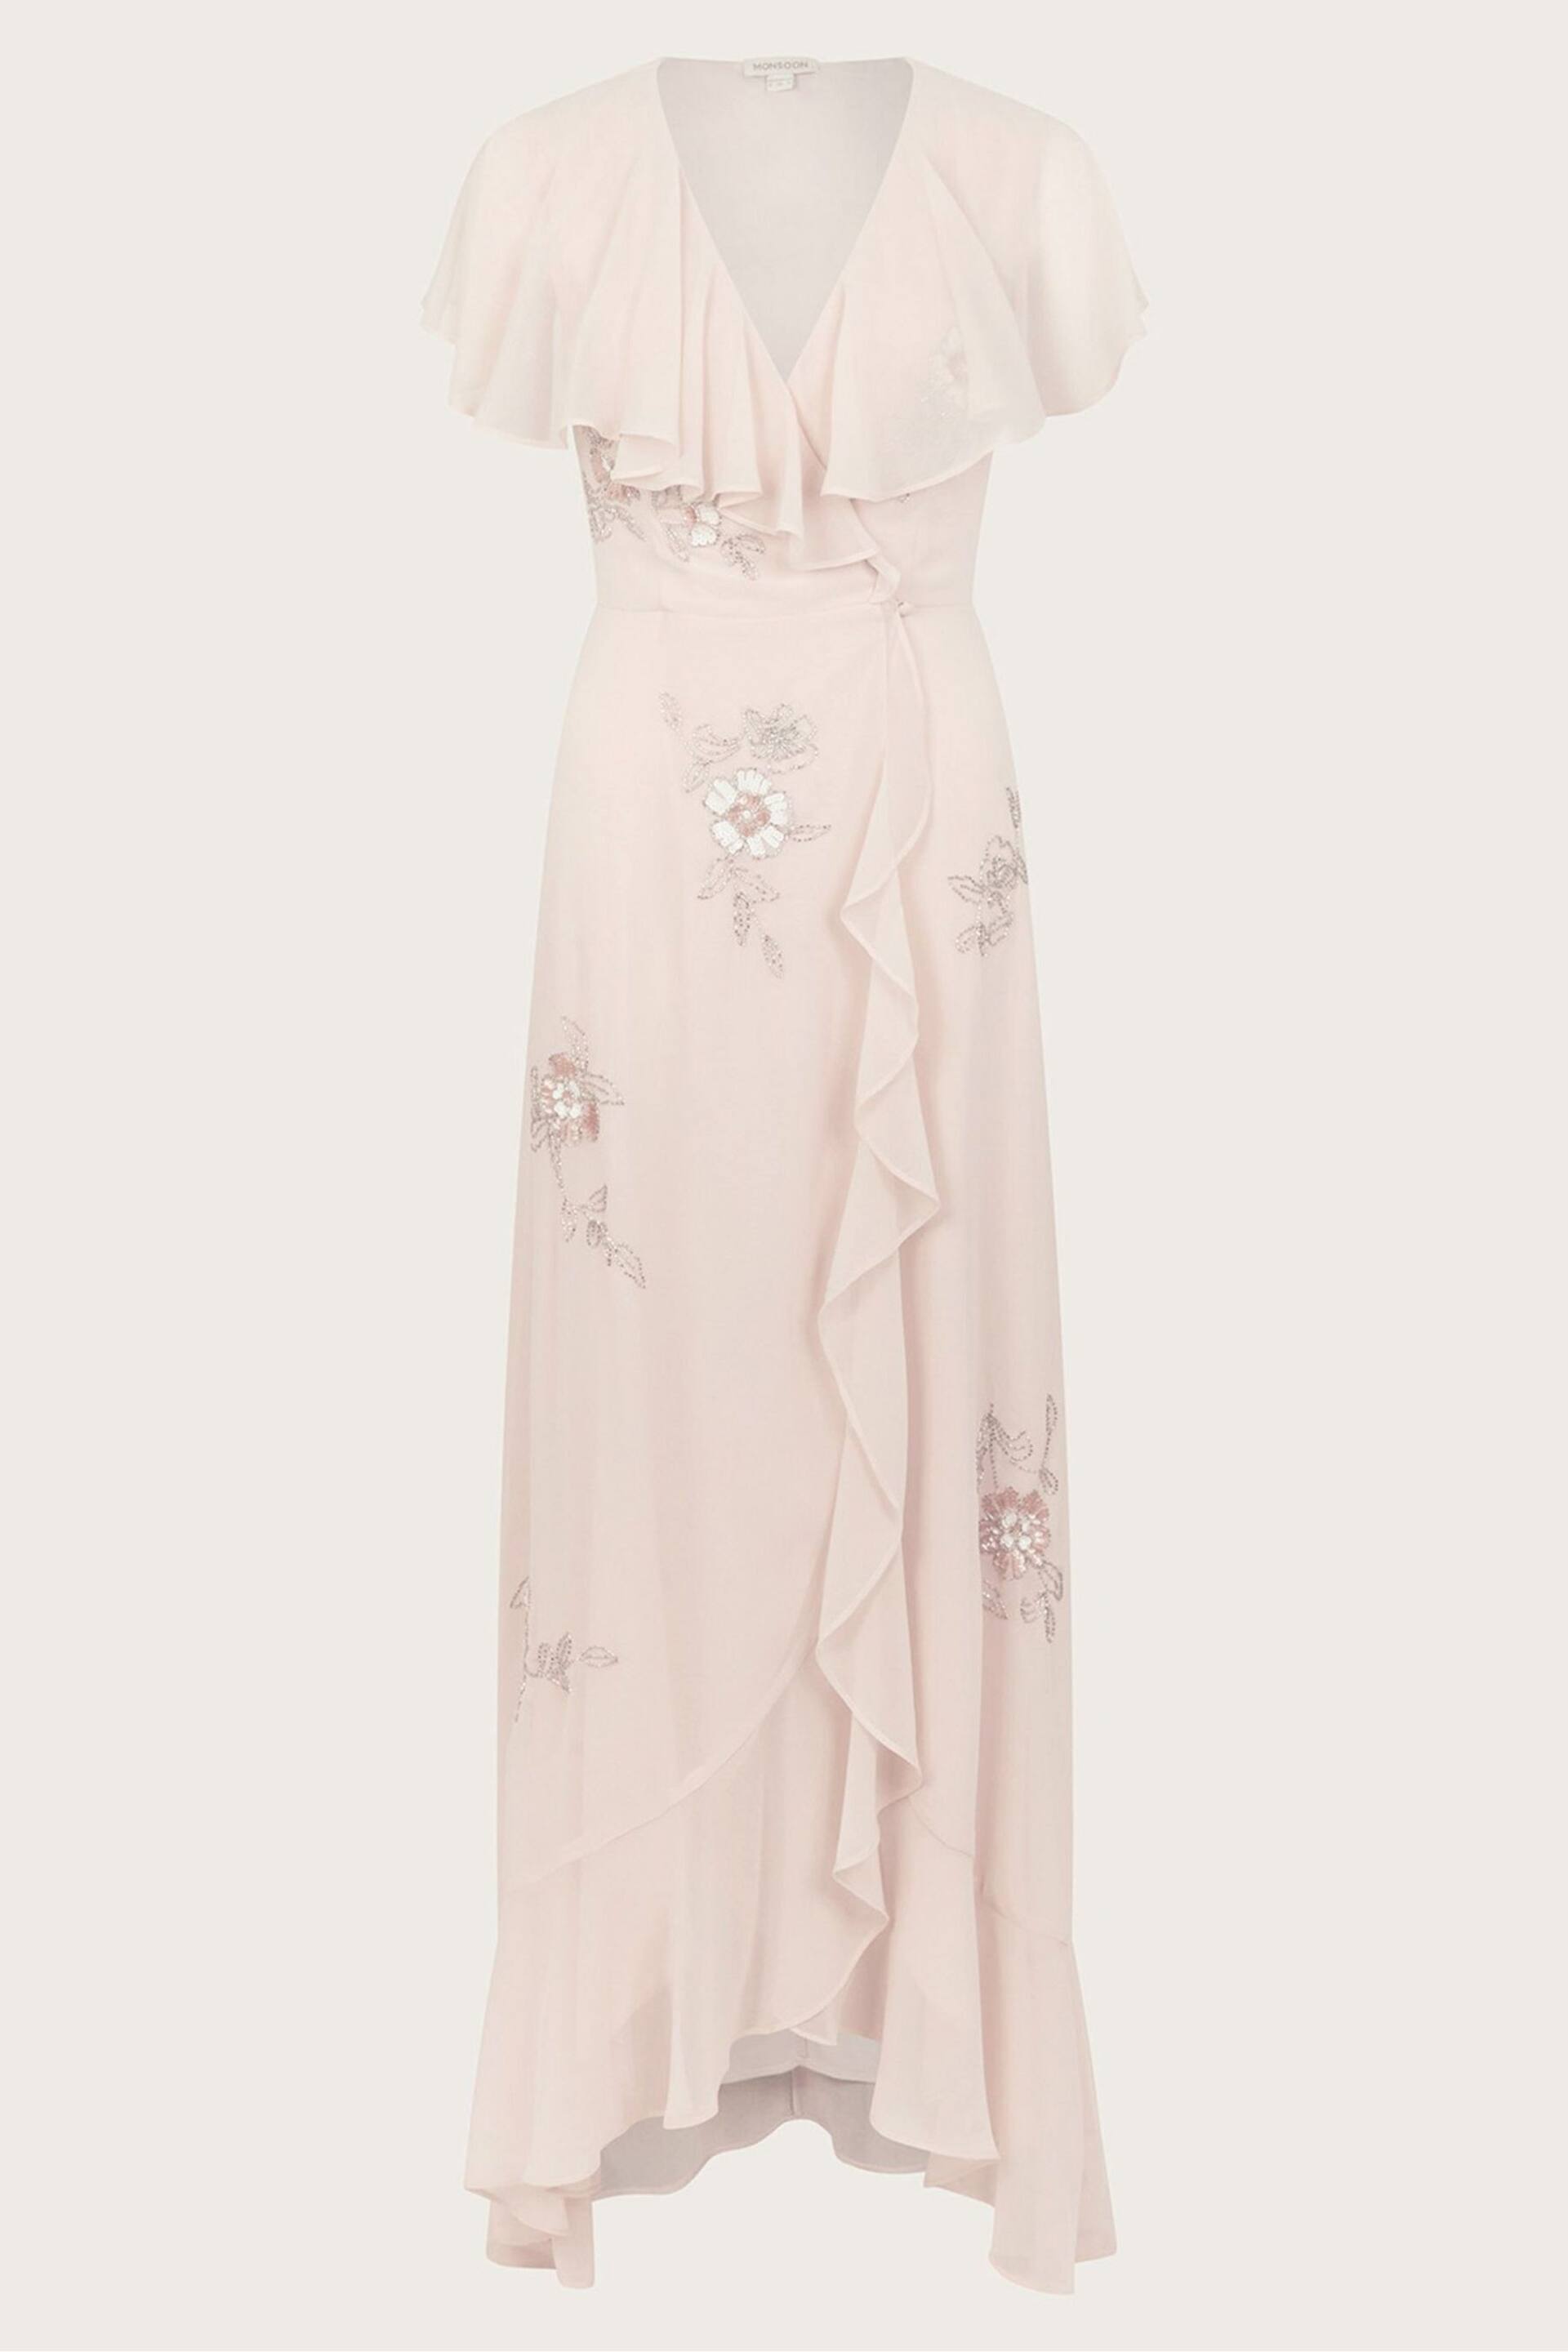 Monsoon Pink Ausha Embellished Wrap Dress - Image 5 of 5